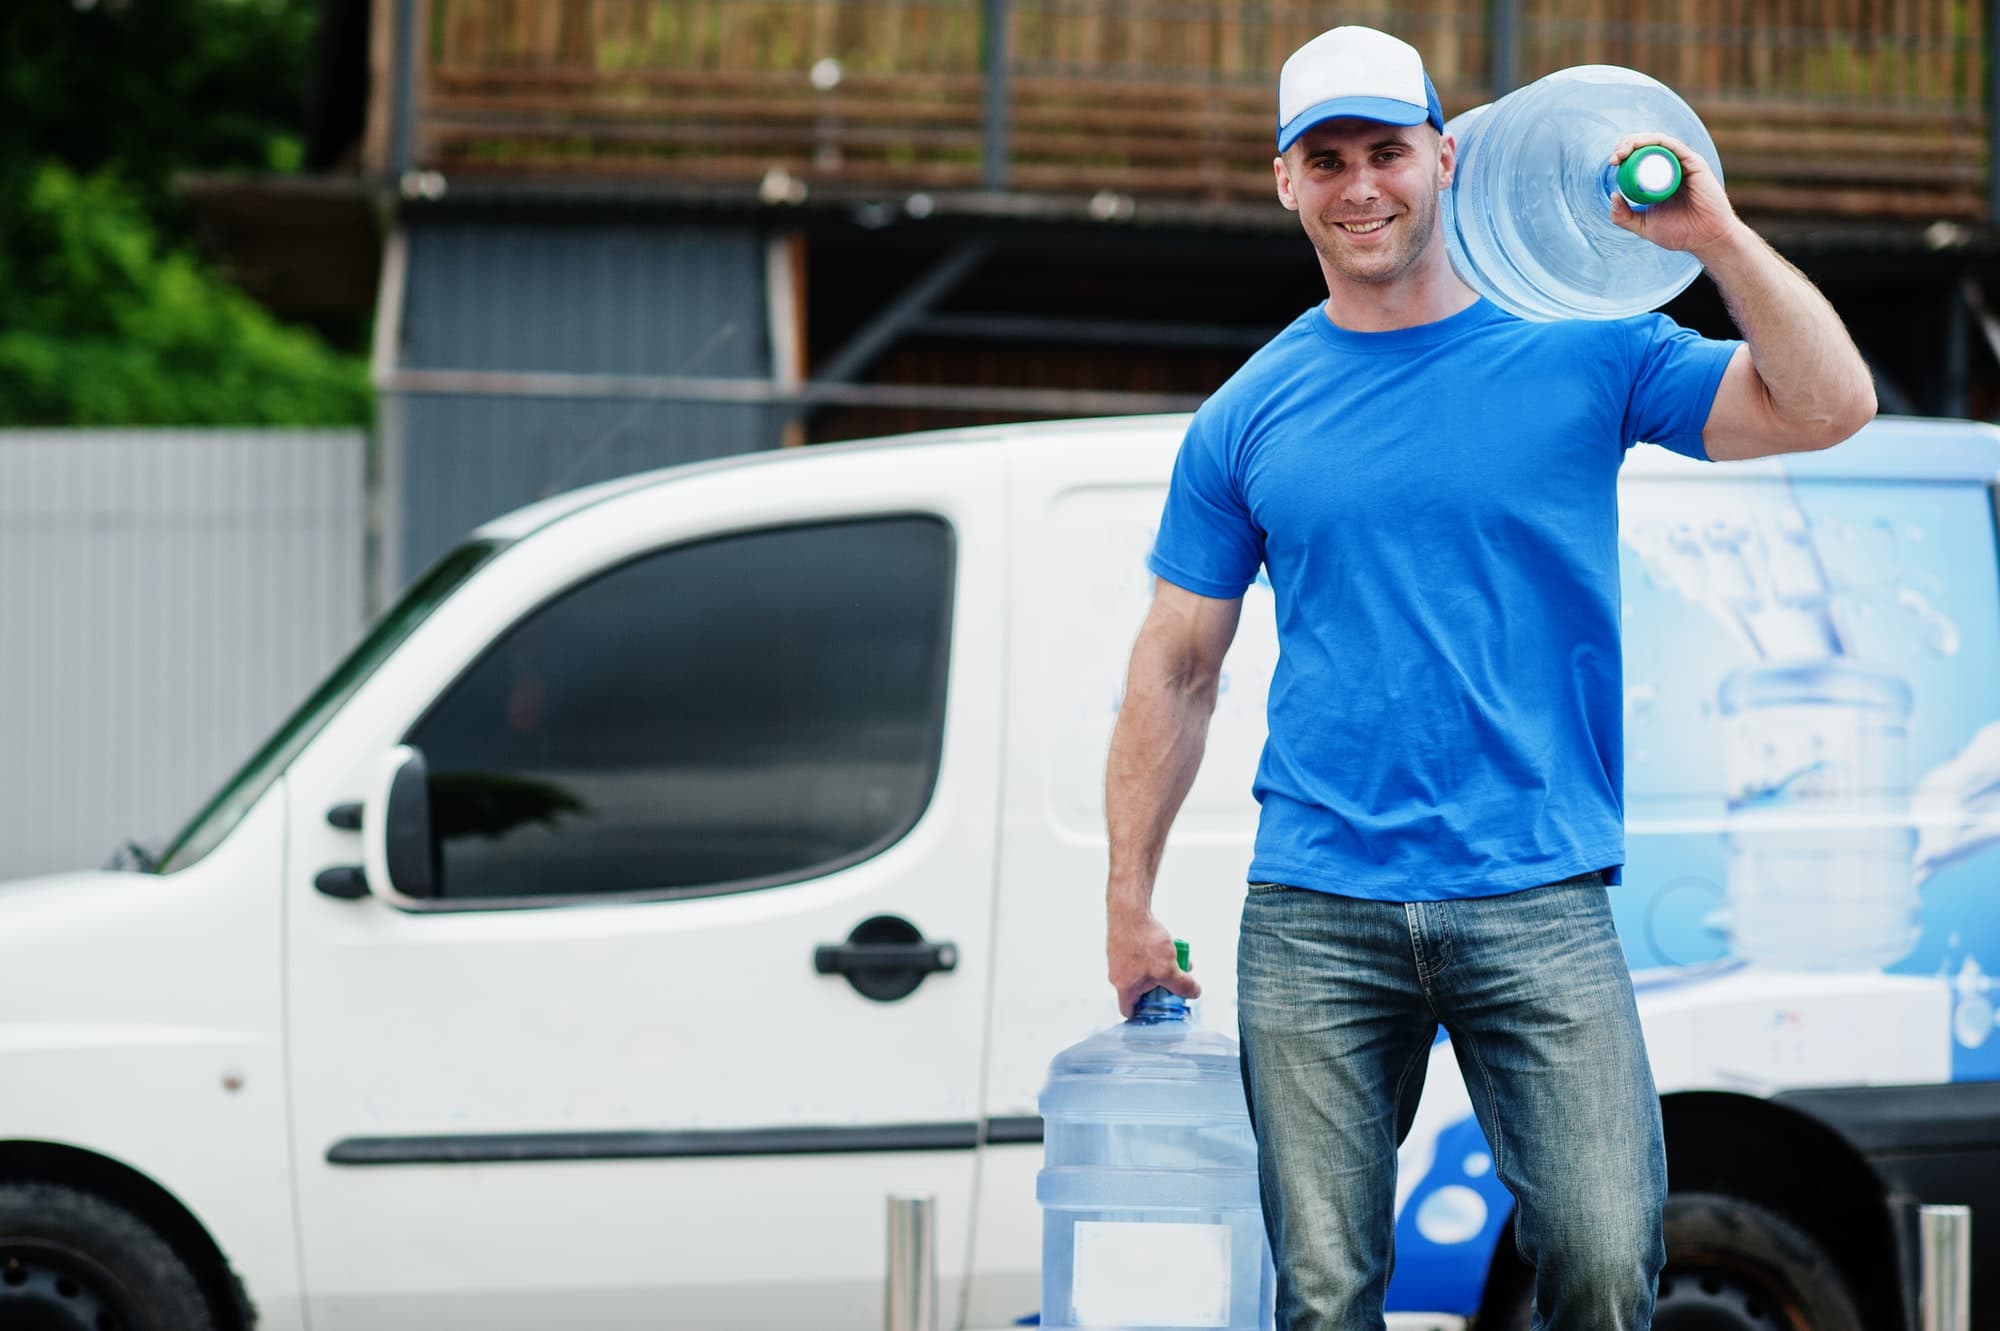 Delivery men in front cargo van delivering bottles of water.